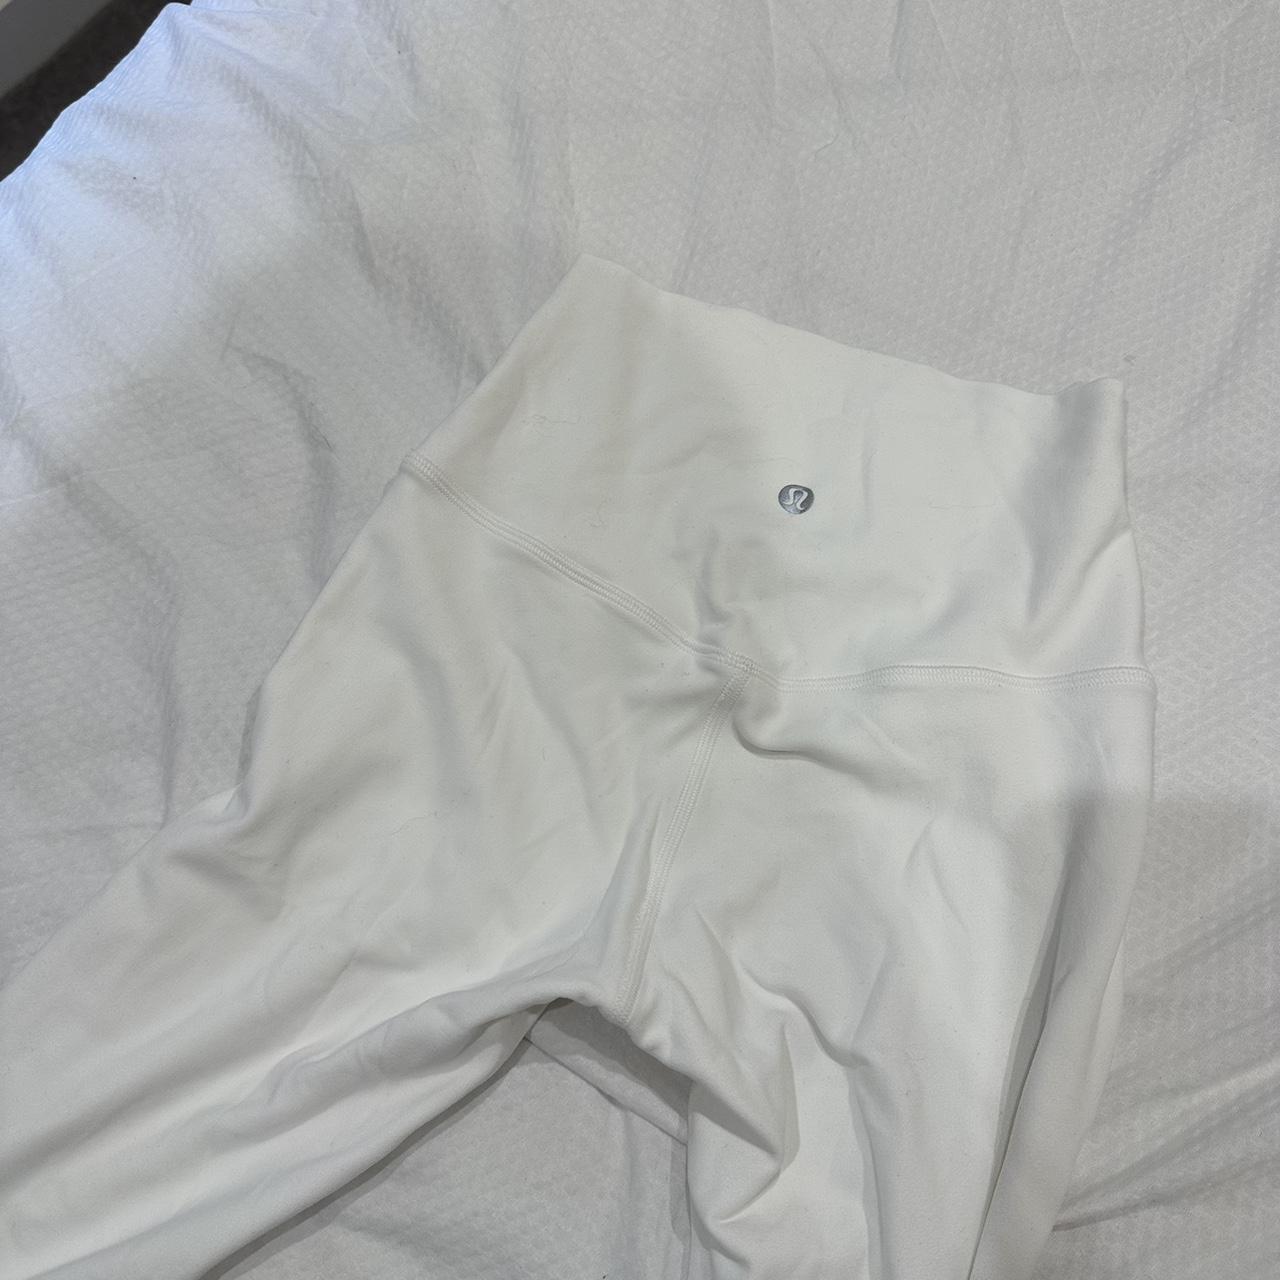 Lululemon align leggings in white Size US 2 Never worn - Depop